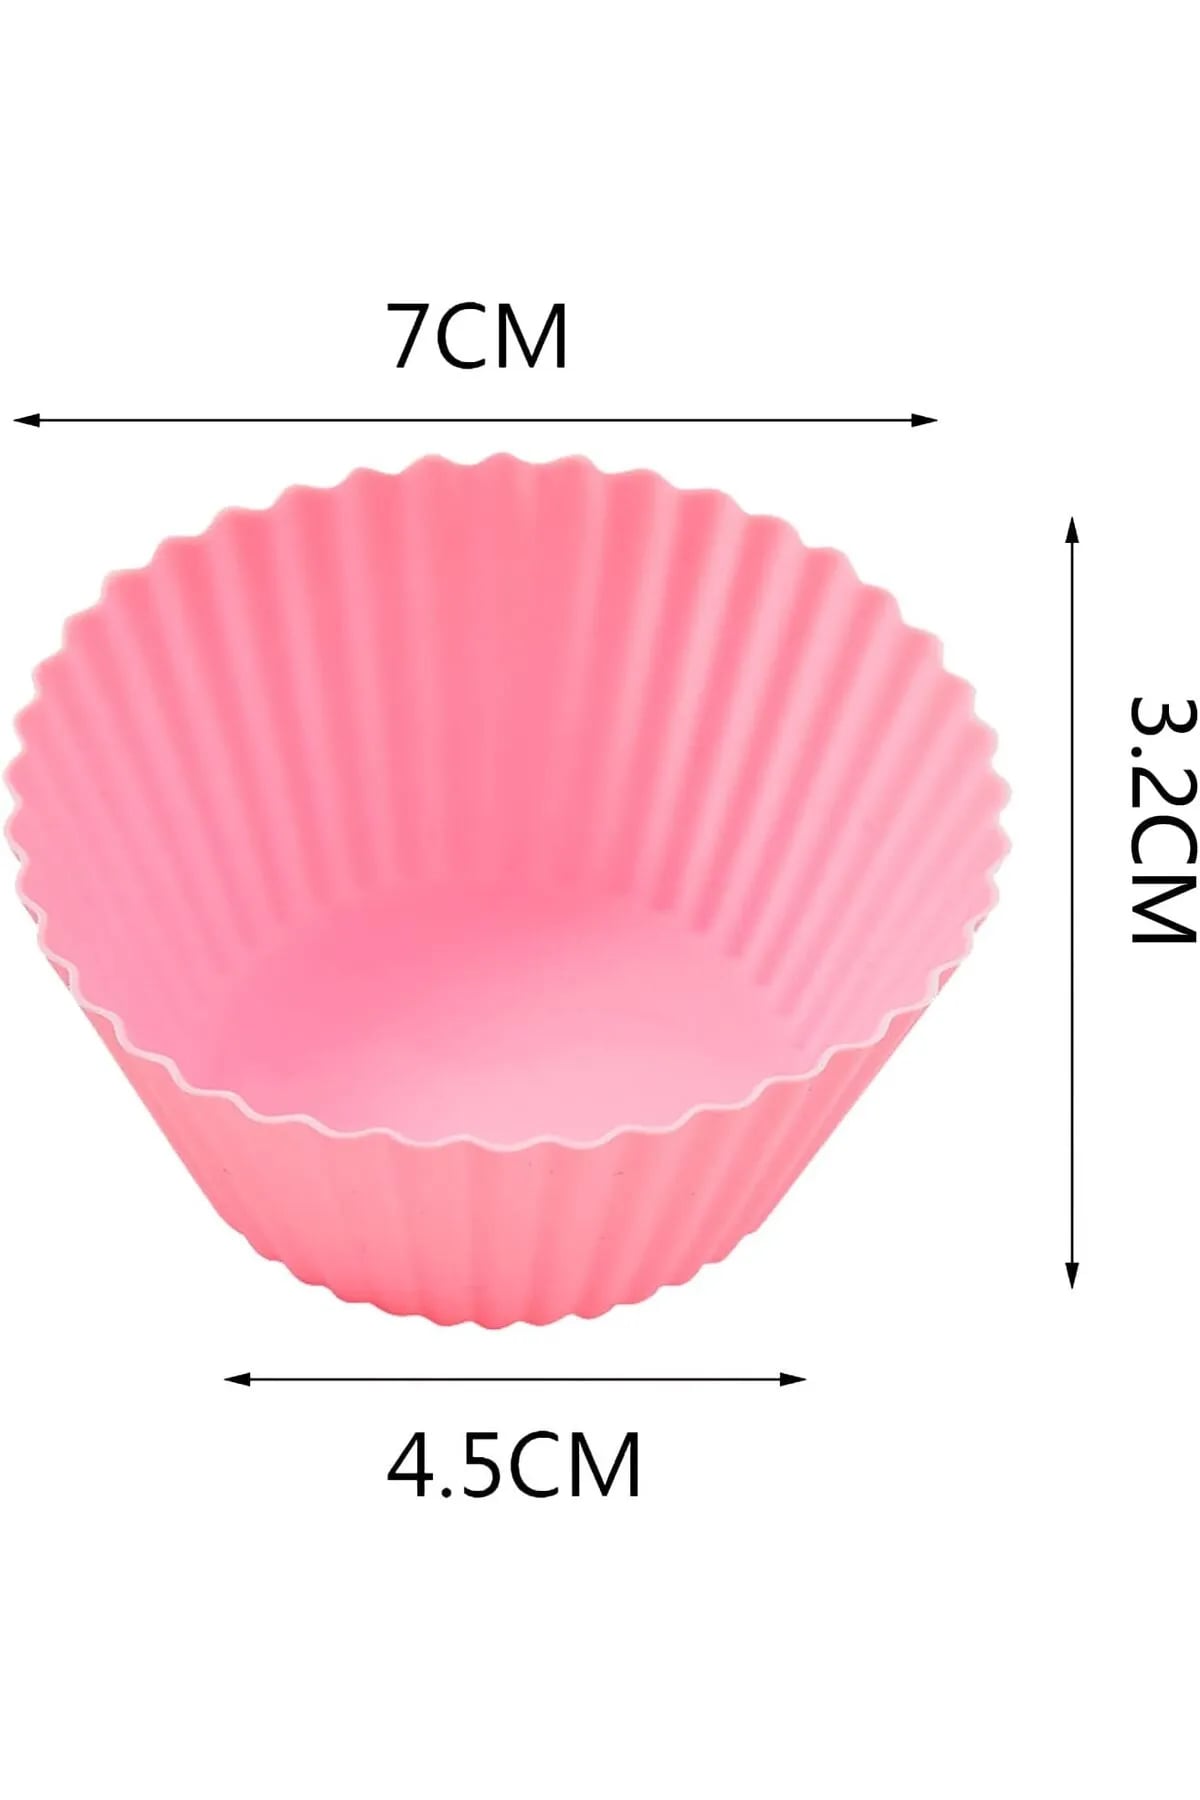 CLZ174 6 Adet Yıkanabilir Mini Tırtıklı Muffin Kalıbı- Ribanalı Kek-Cupcake- Renkli Hamur Işi Kabı